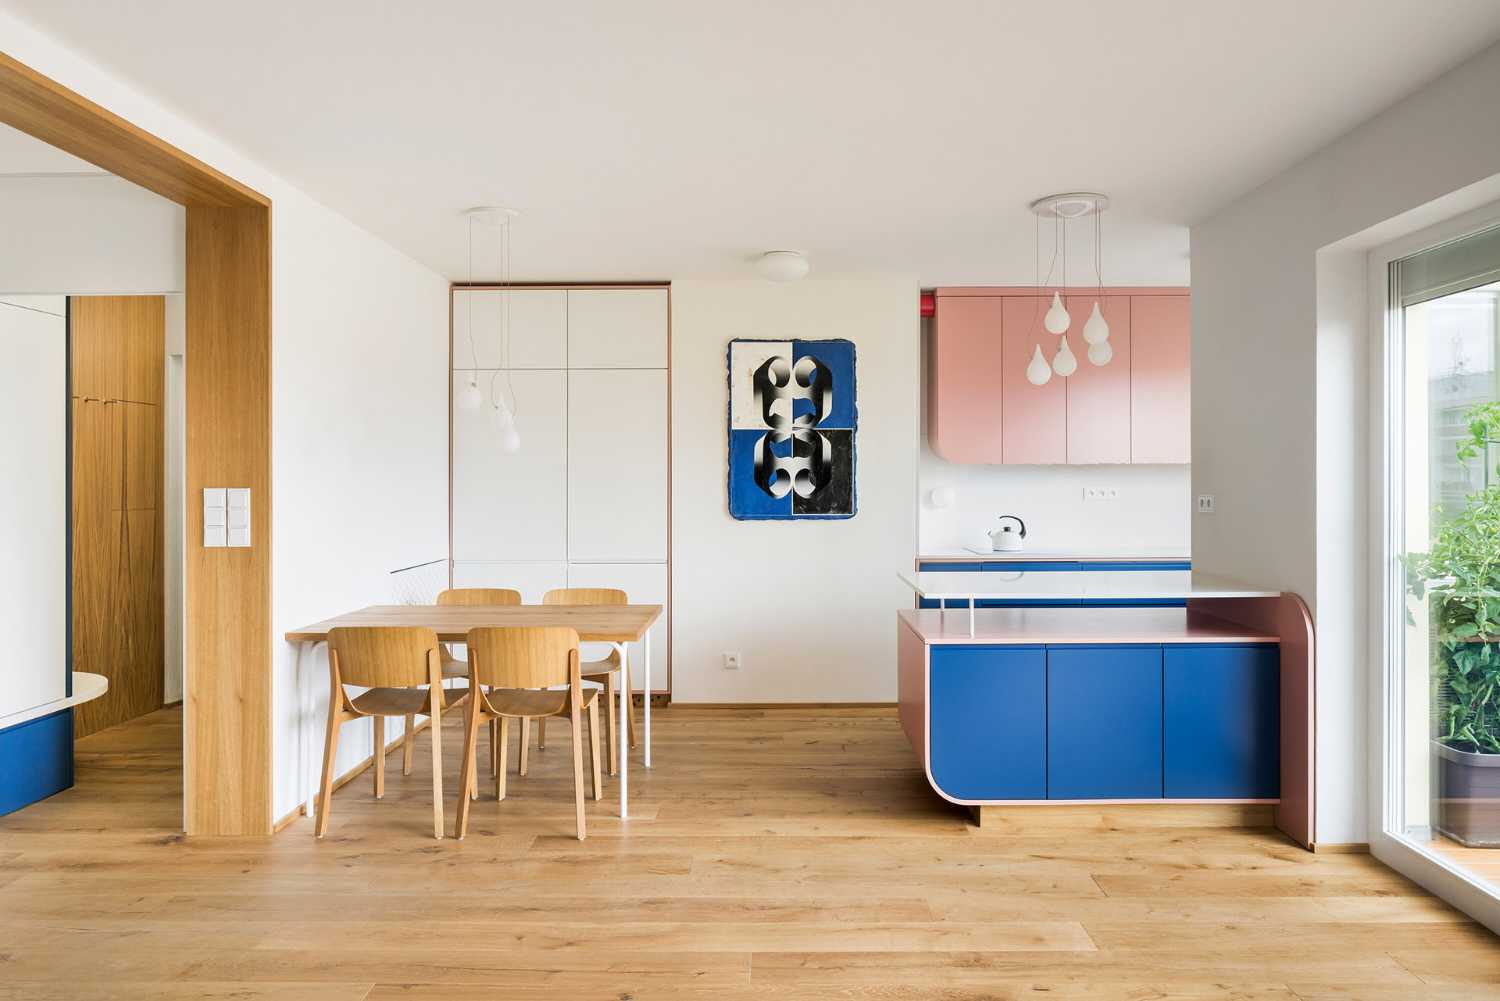 Appartamento Sessantanove un semplice spazio di vita per una famiglia che capisce l'arte e vuole goderne